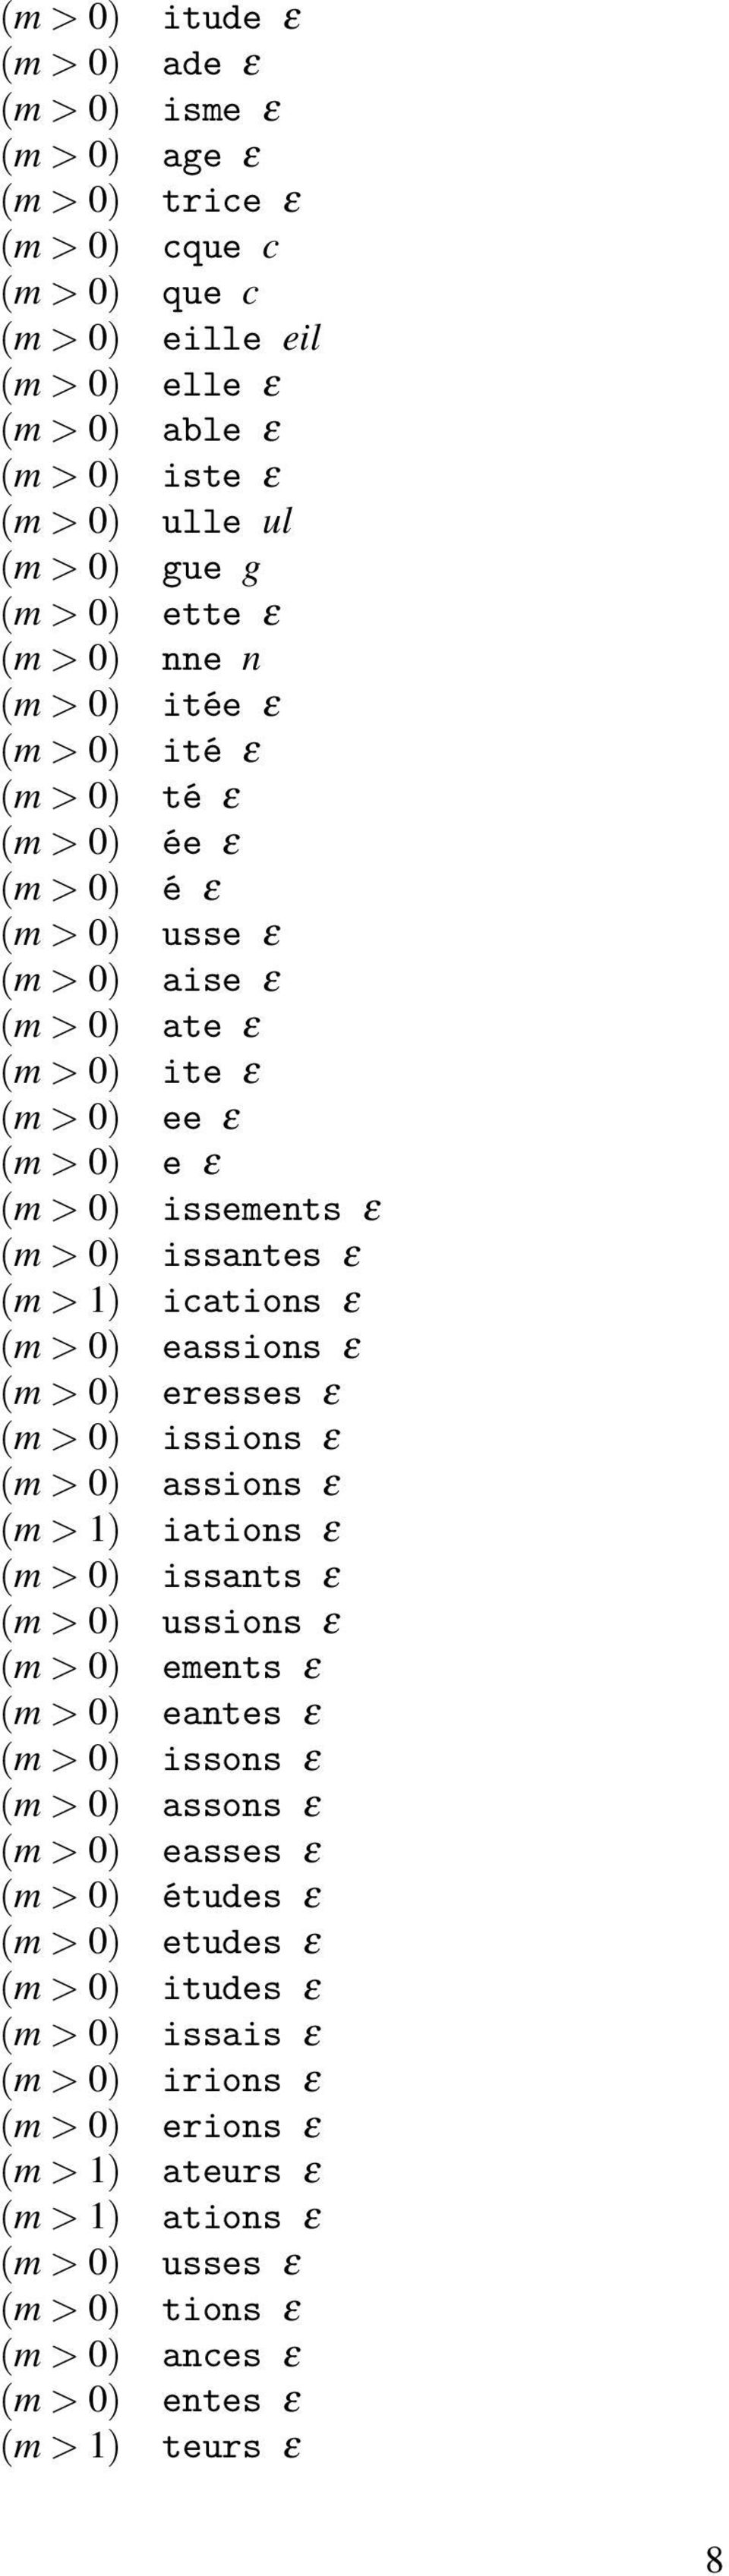 > 0) issantes ε (m > 1) ications ε (m > 0) eassions ε (m > 0) eresses ε (m > 0) issions ε (m > 0) assions ε (m > 1) iations ε (m > 0) issants ε (m > 0) ussions ε (m > 0) ements ε (m > 0) eantes ε (m